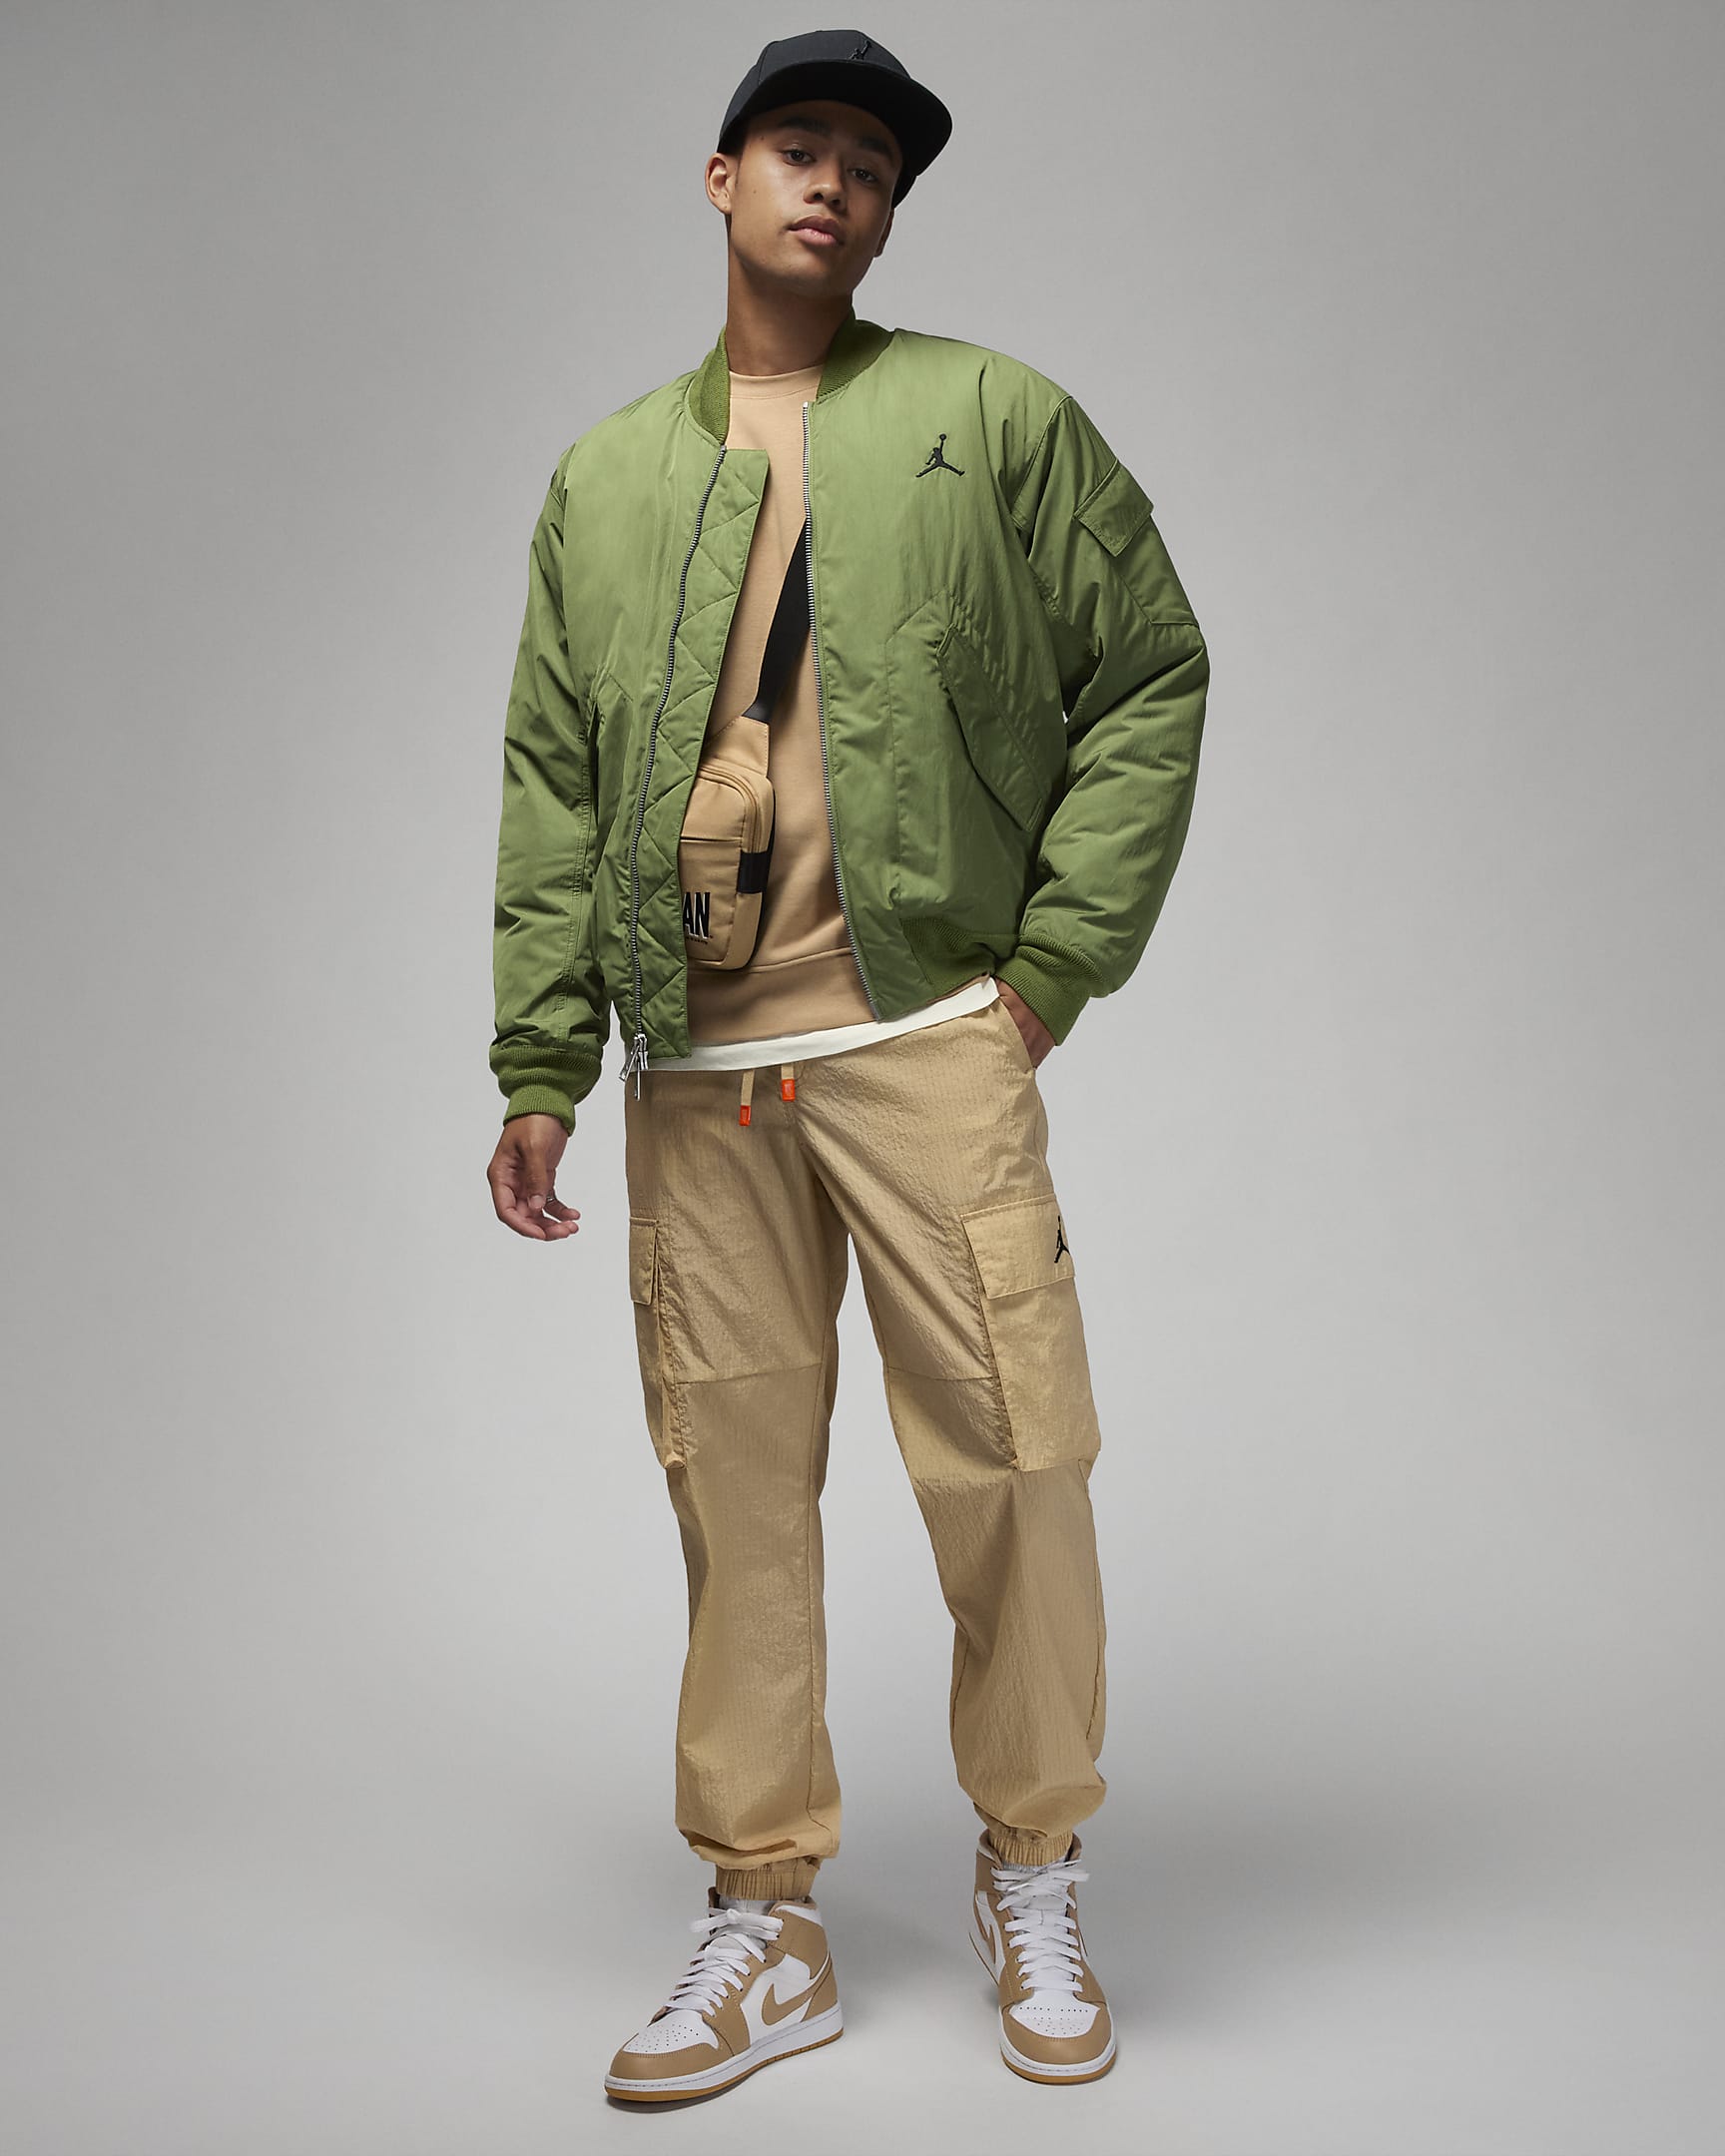 Jordan Essentials Men's Renegade Jacket. Nike BG